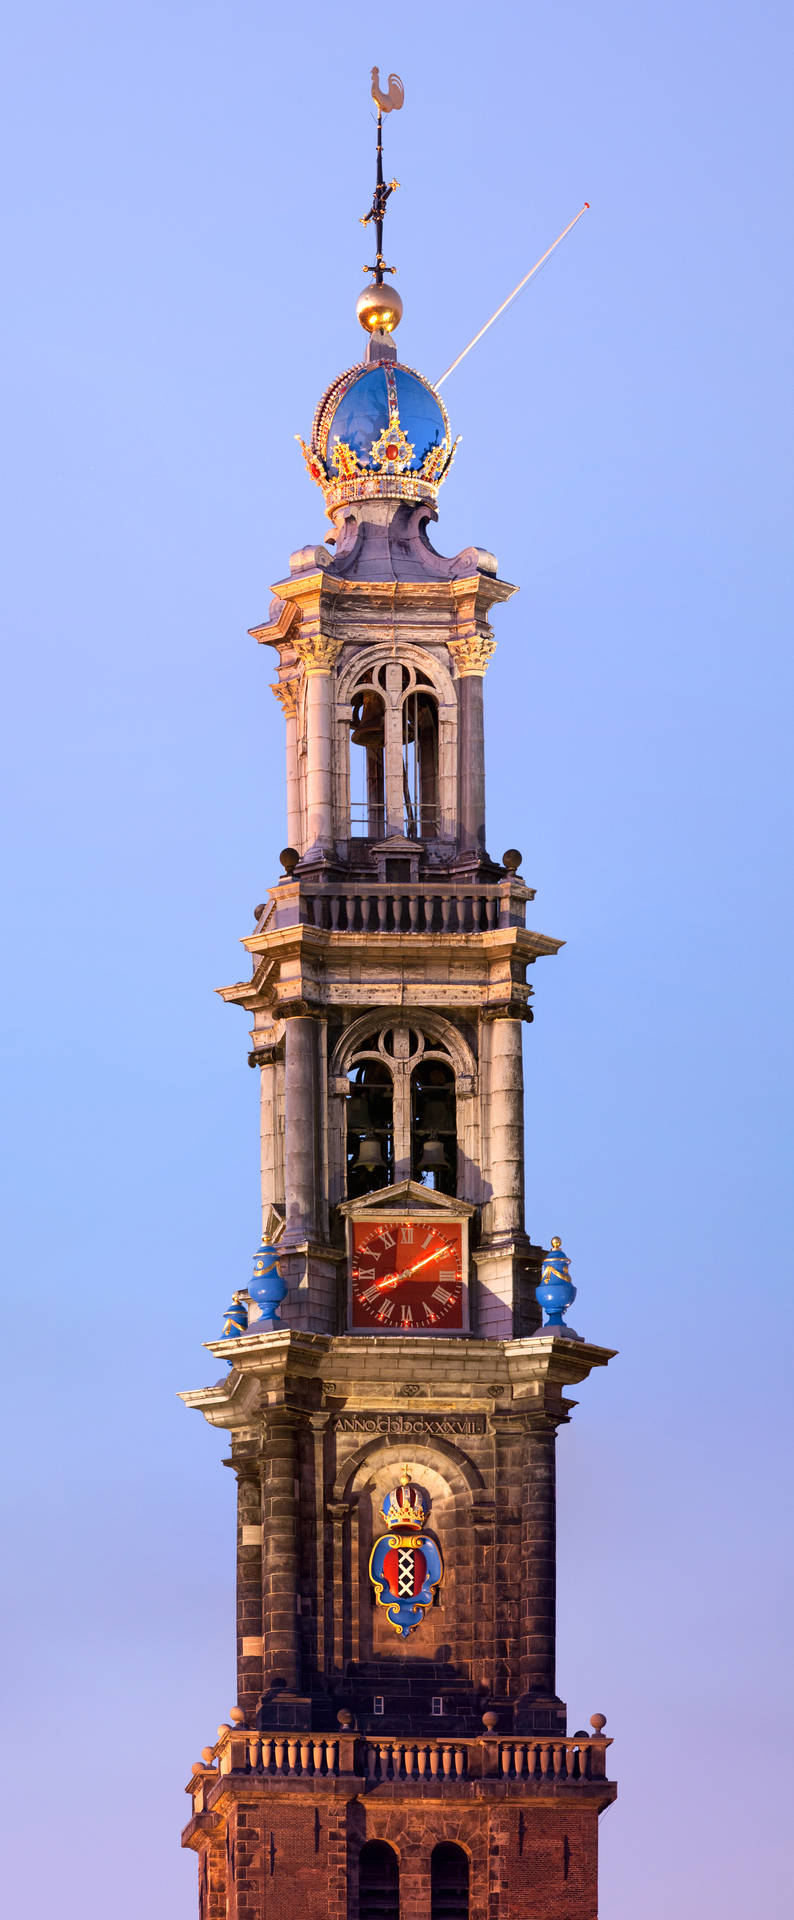 Amsterdam Westerkerk Tower's Peak Picture